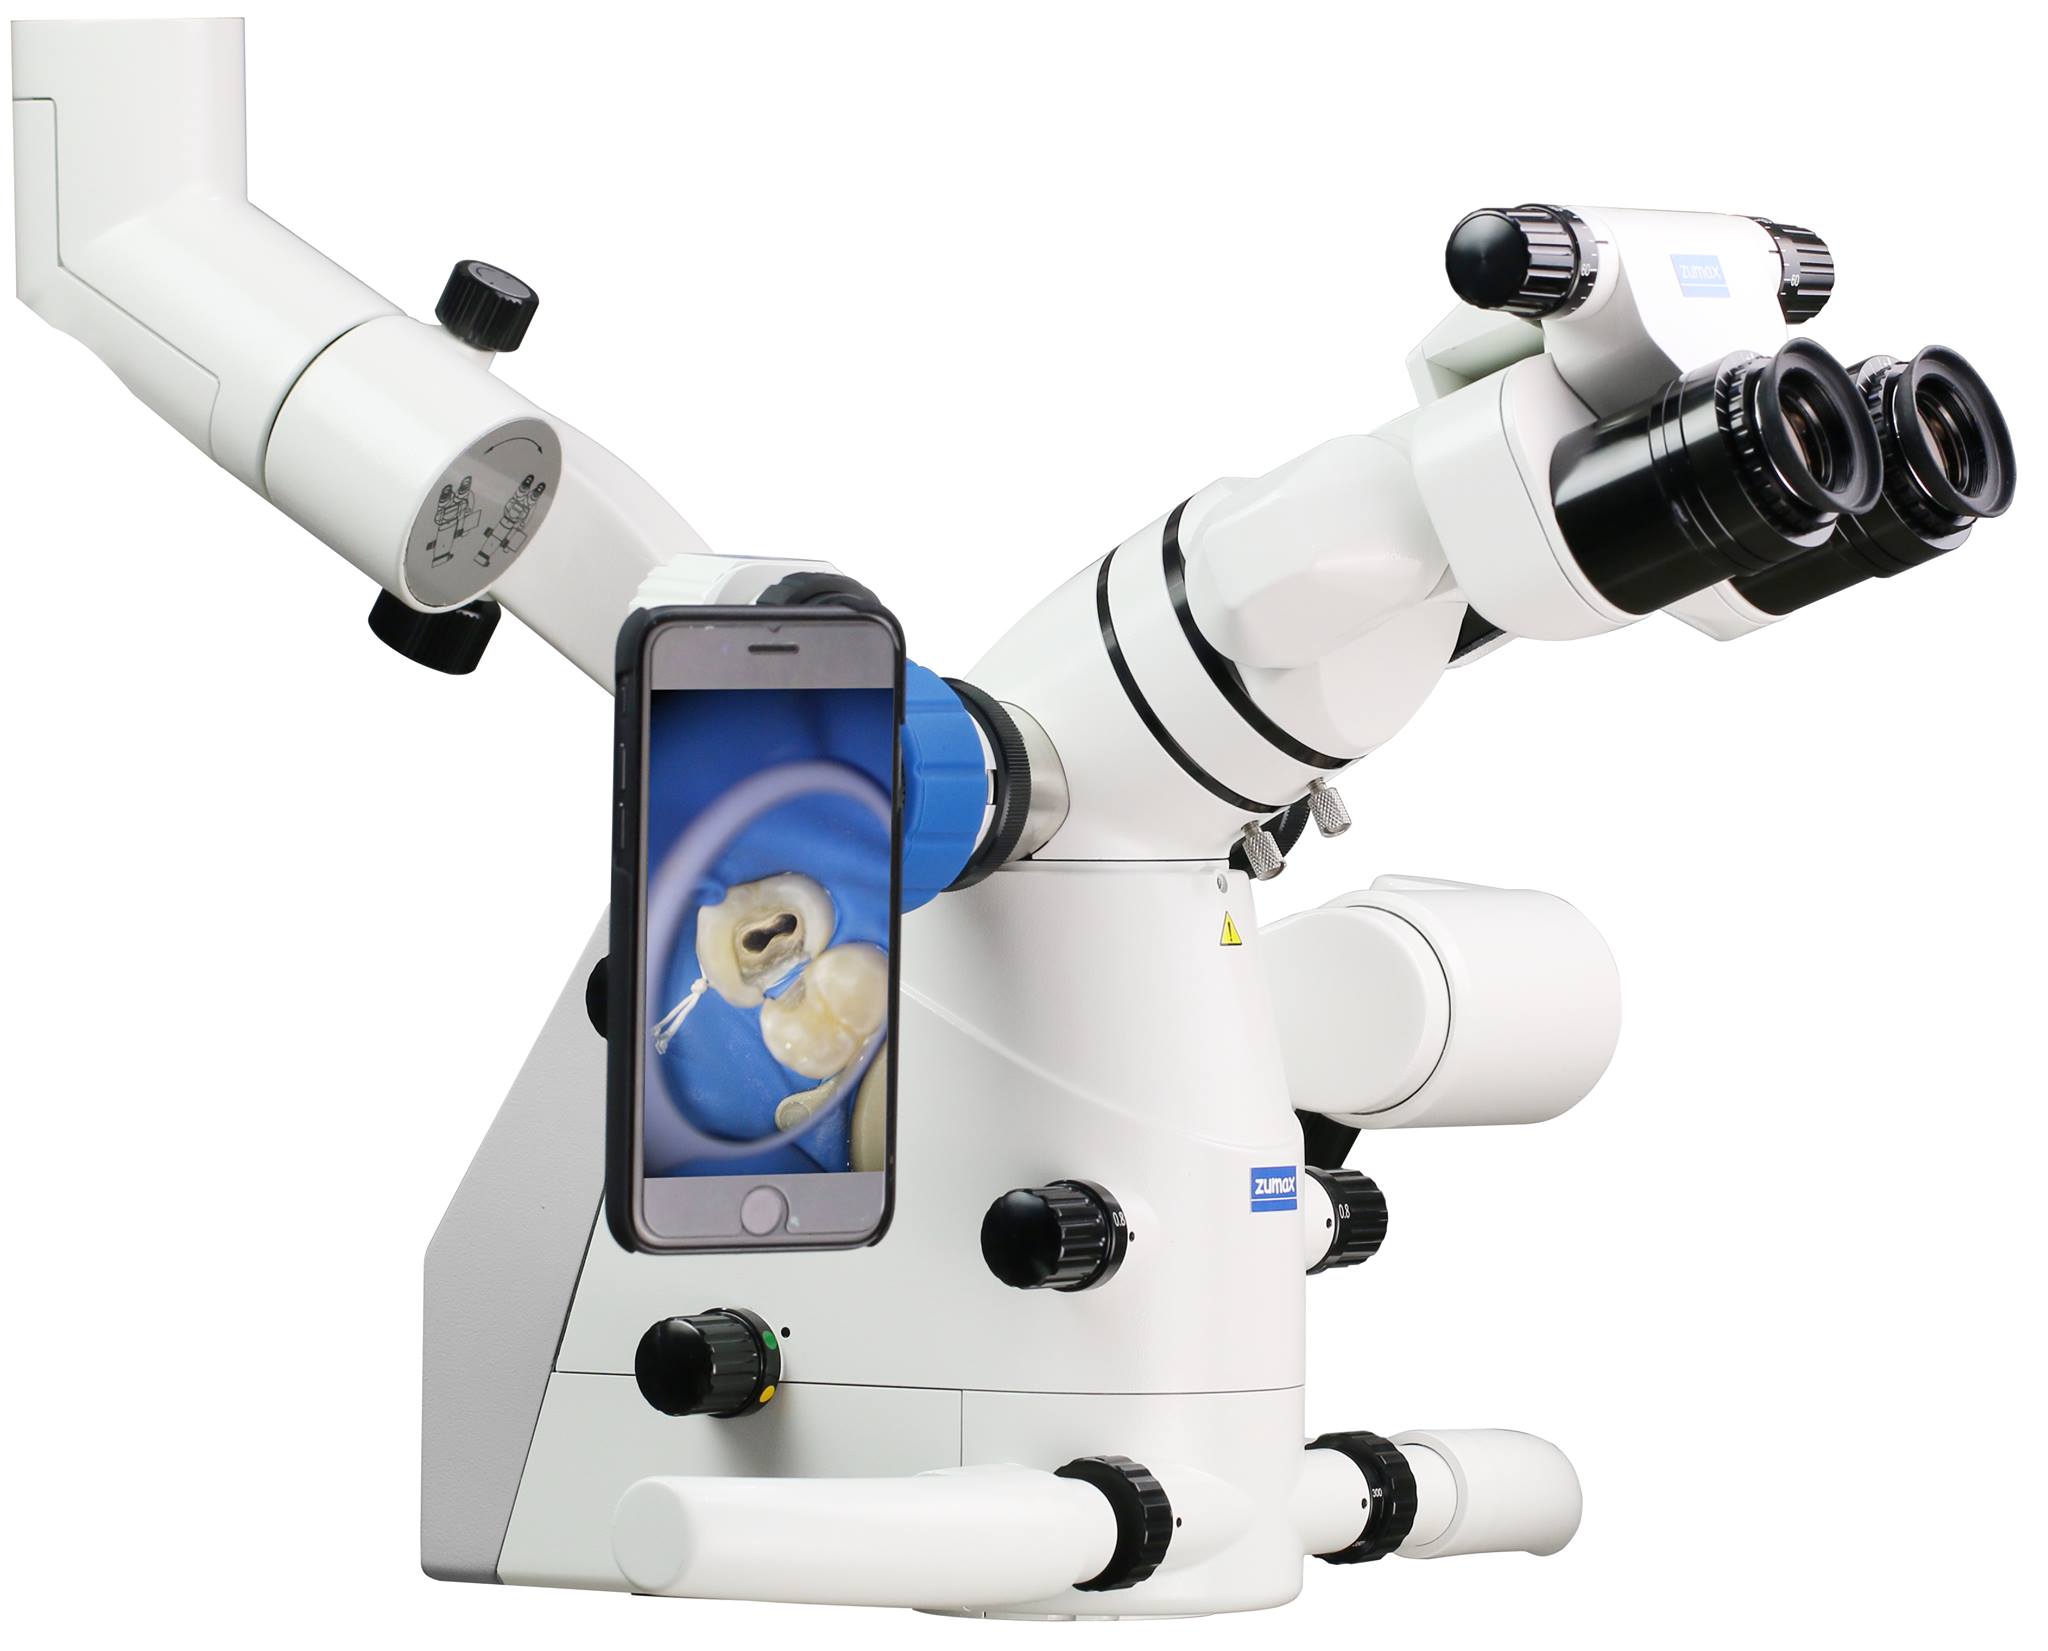 Įsigijome Zumax 2380 mikroskopą!